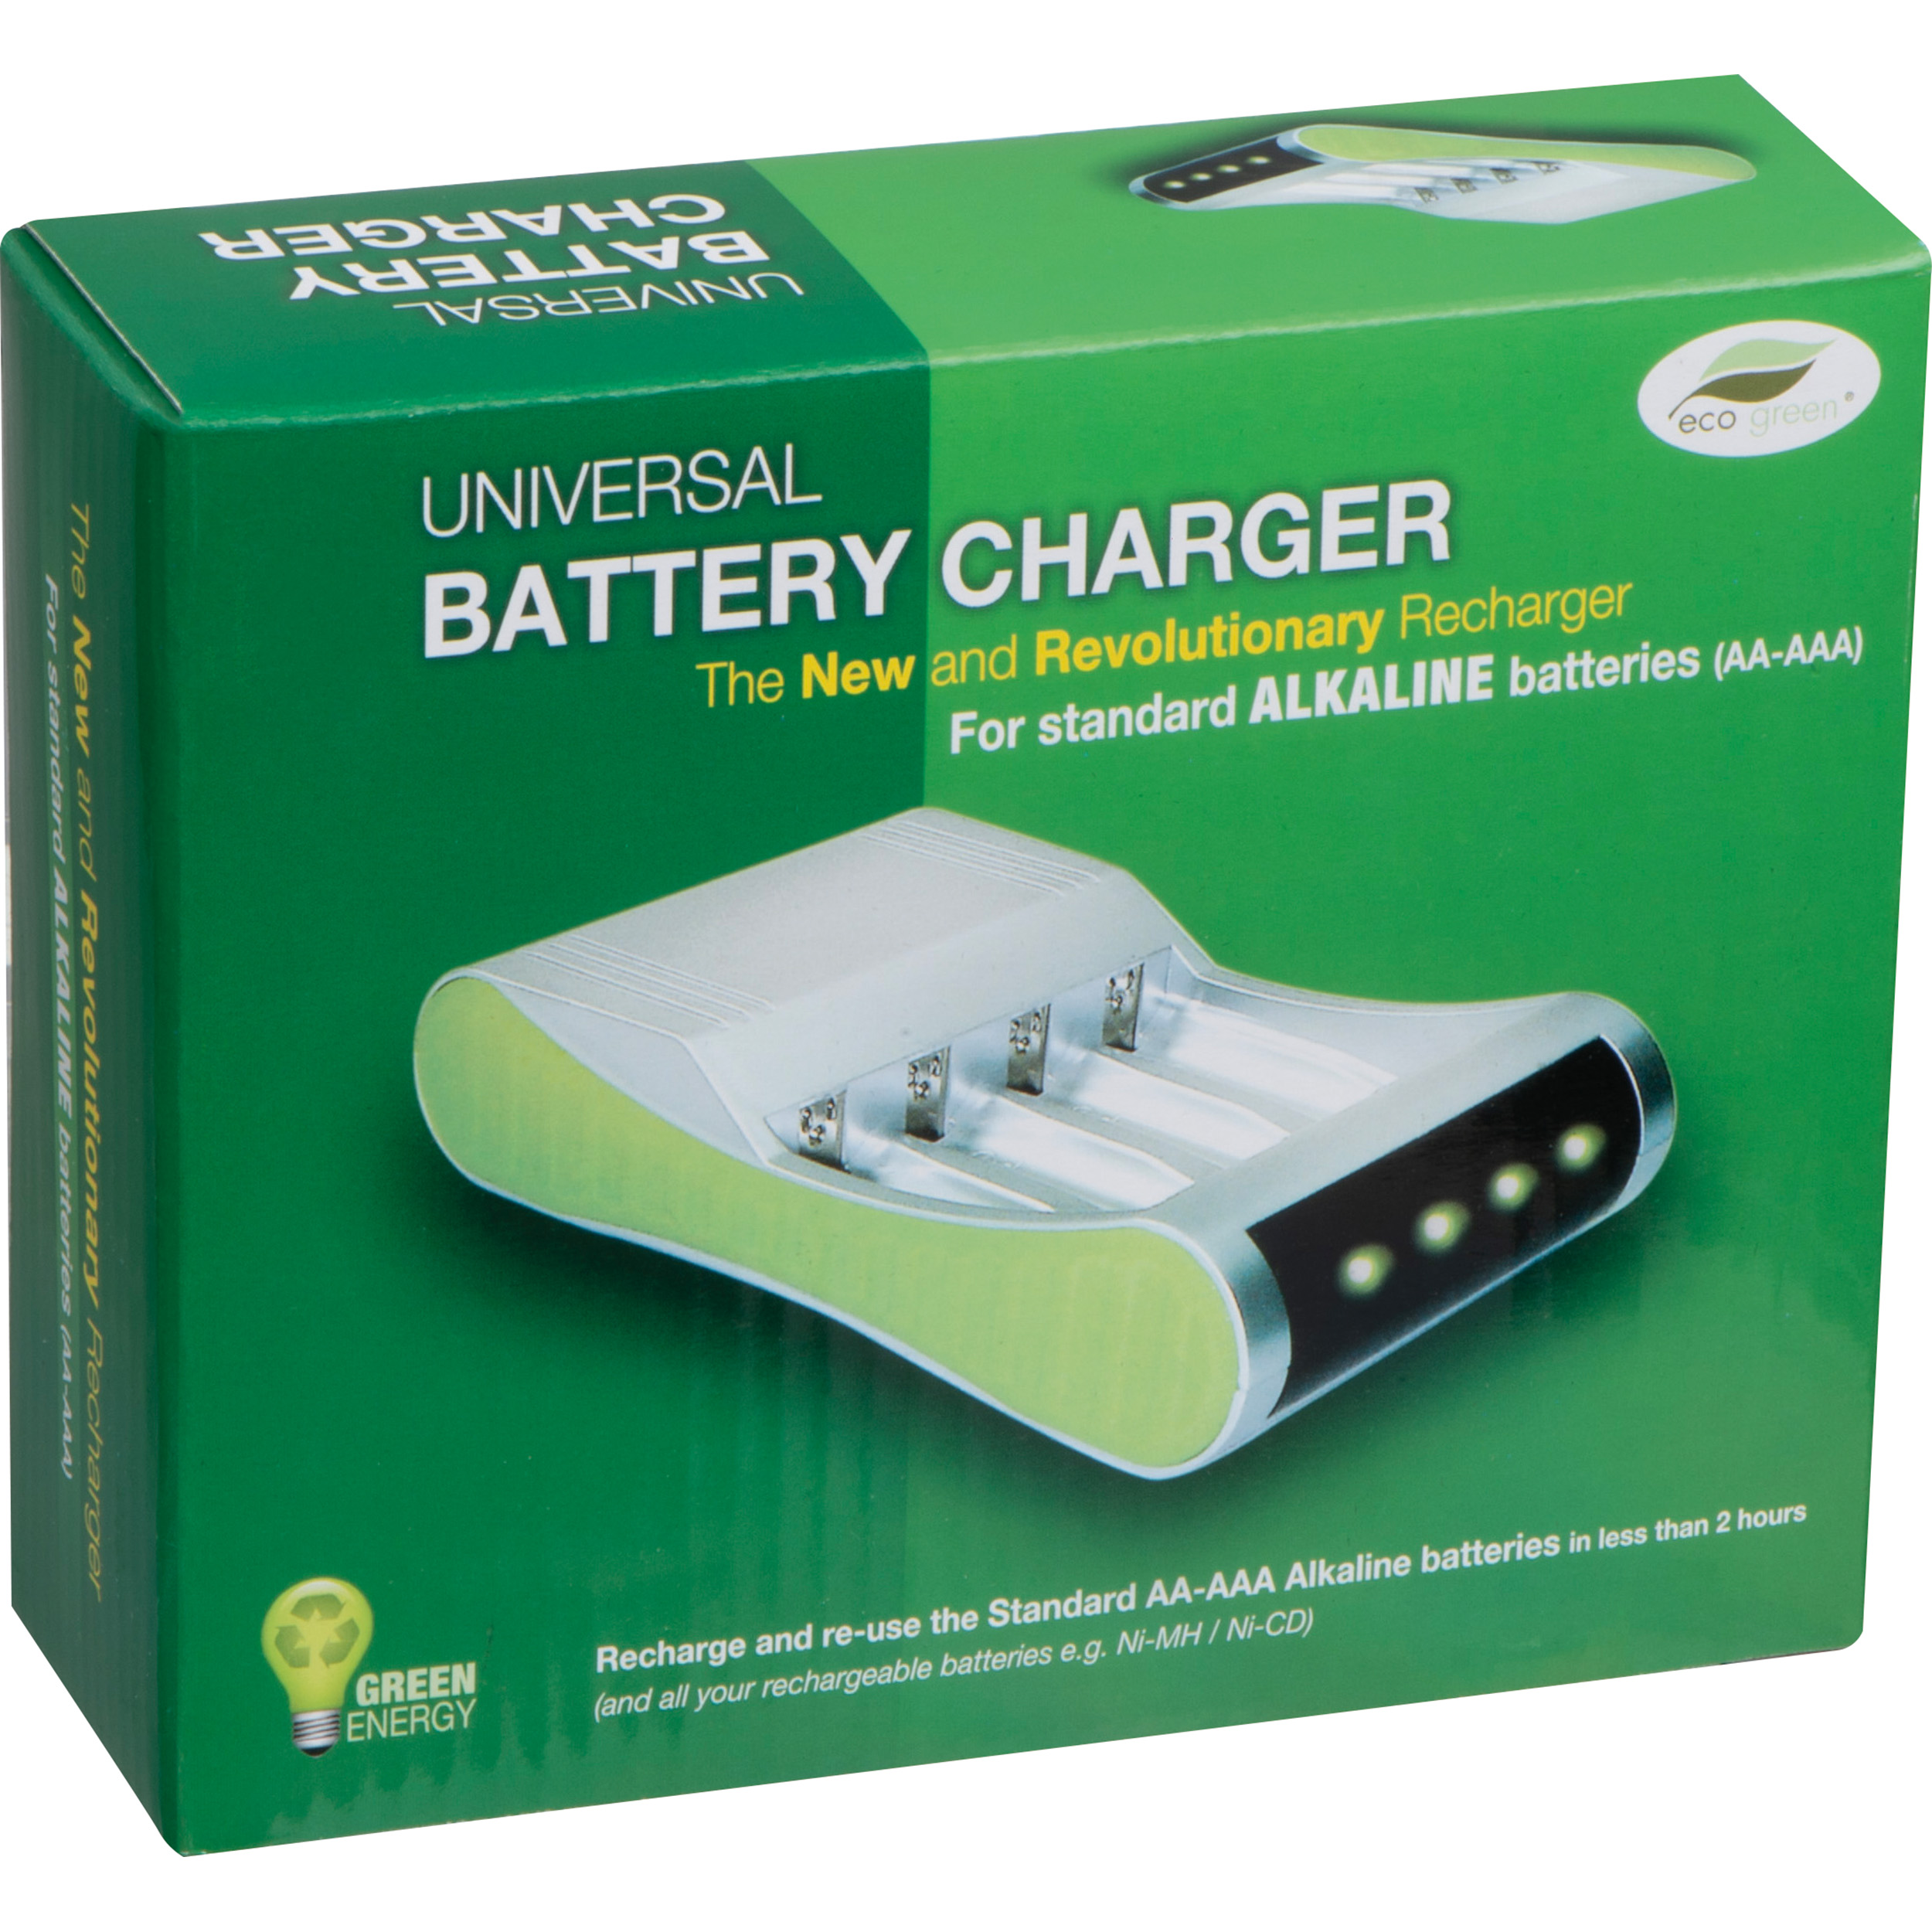 Batterijlader voor 4 batterijen